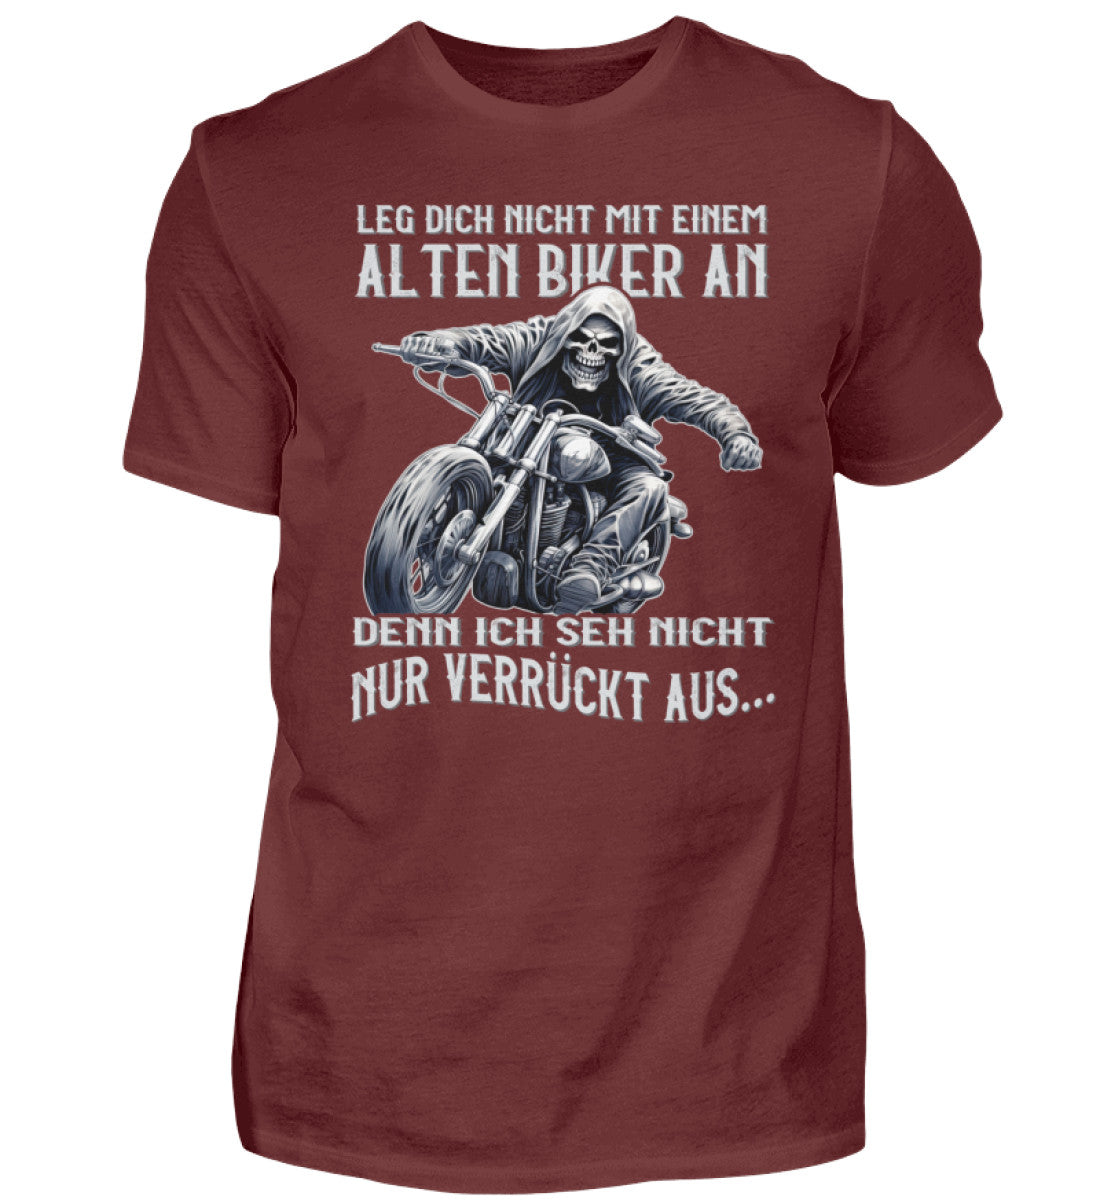 Ein Biker T-Shirt für Motorradfahrer von Wingbikers mit dem Aufdruck, Leg dich nicht mit einem alten Biker an, denn ich seh nicht nur verrückt aus - in weinrot.